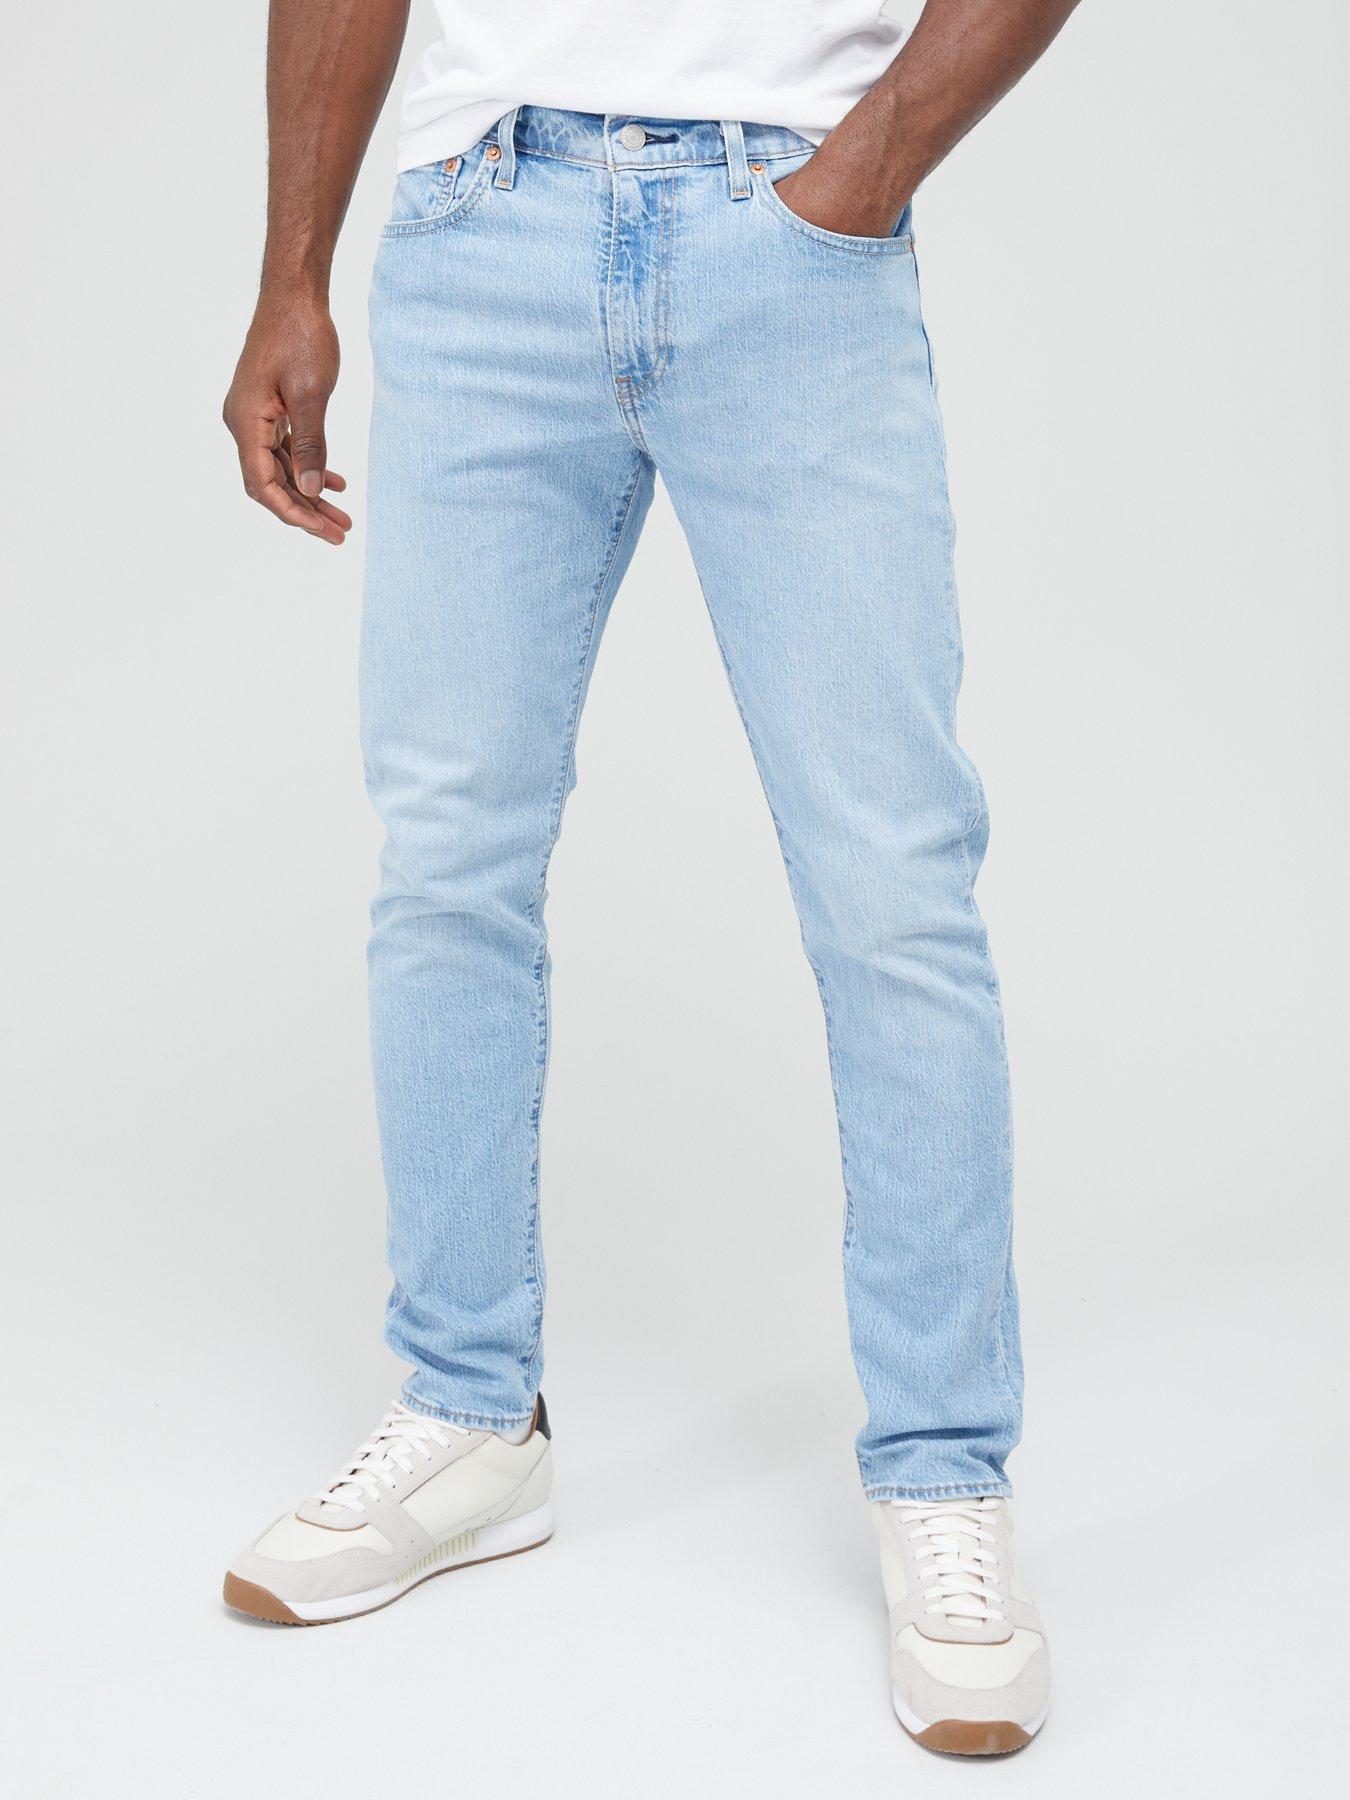 Levi's 512 Slim Taper Fit Jeans - Medium Indigo | Very Ireland